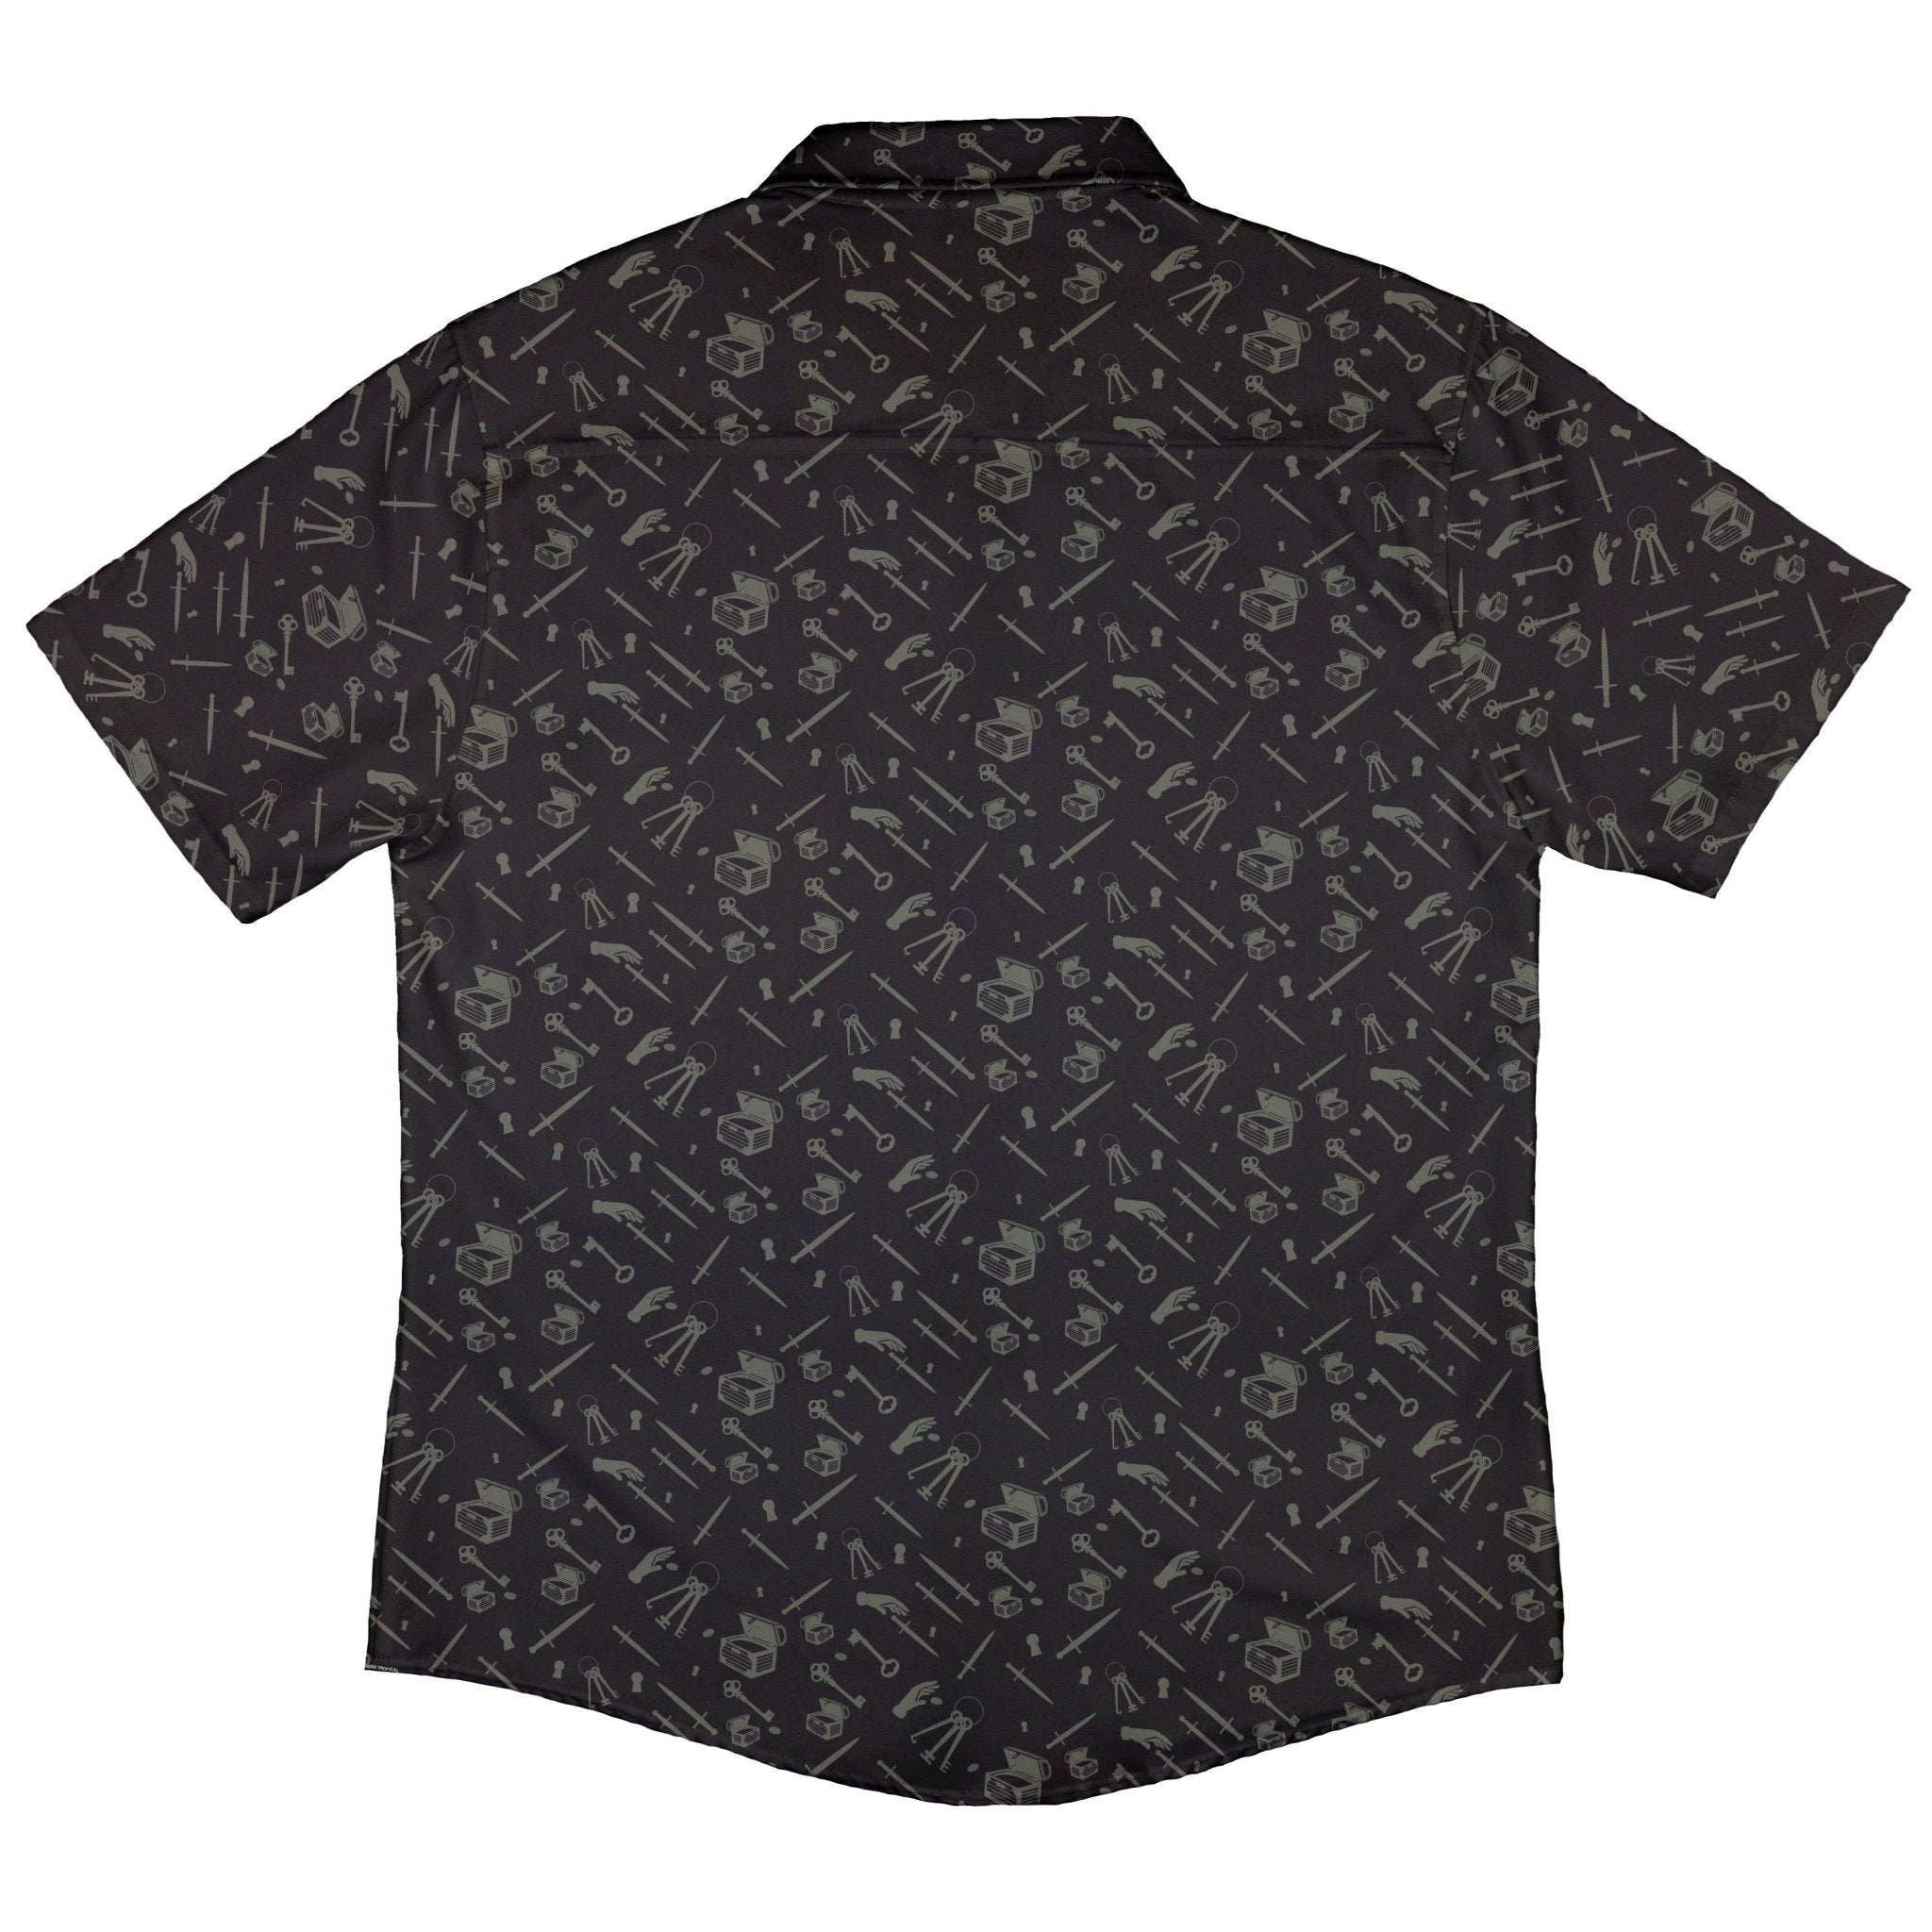 Dnd Rogue Class Button Up Shirt - adult sizing - Design by Heather Davenport - dnd & rpg print